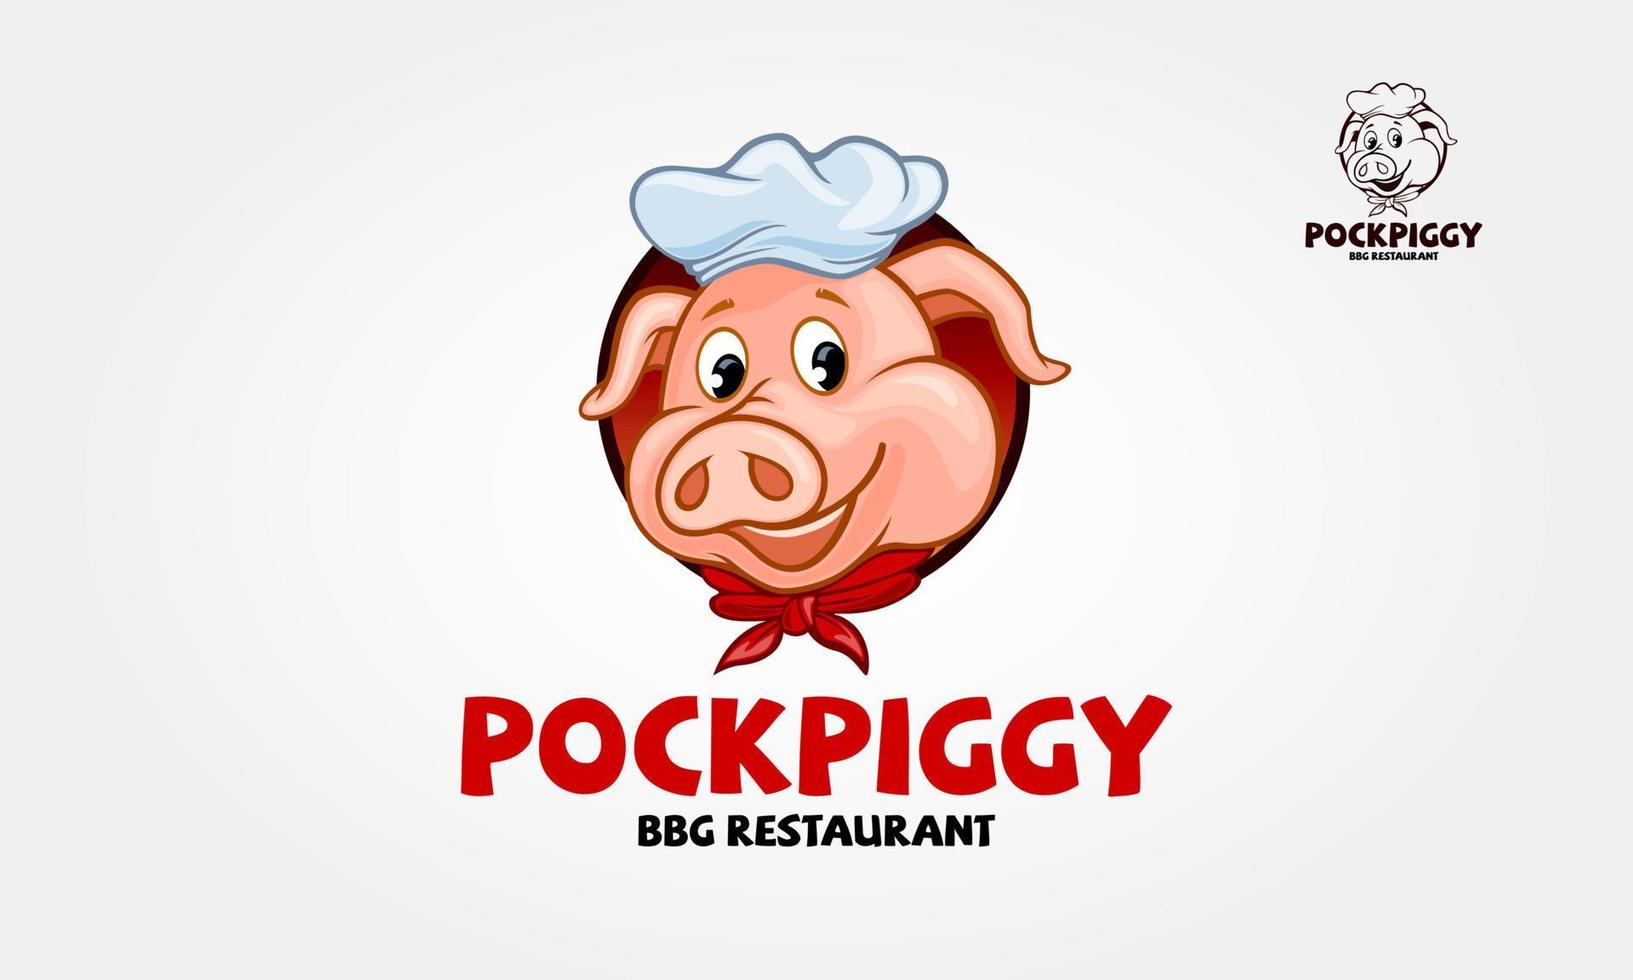 personaggio dei cartoni animati di logo vettoriale pock piggy. un'illustrazione del logo del barbecue di maiale carino e moderno. questo potrebbe essere utilizzato in postazioni barbecue, barbecue all'aperto, grill, ristorante, steakhouse e così via.